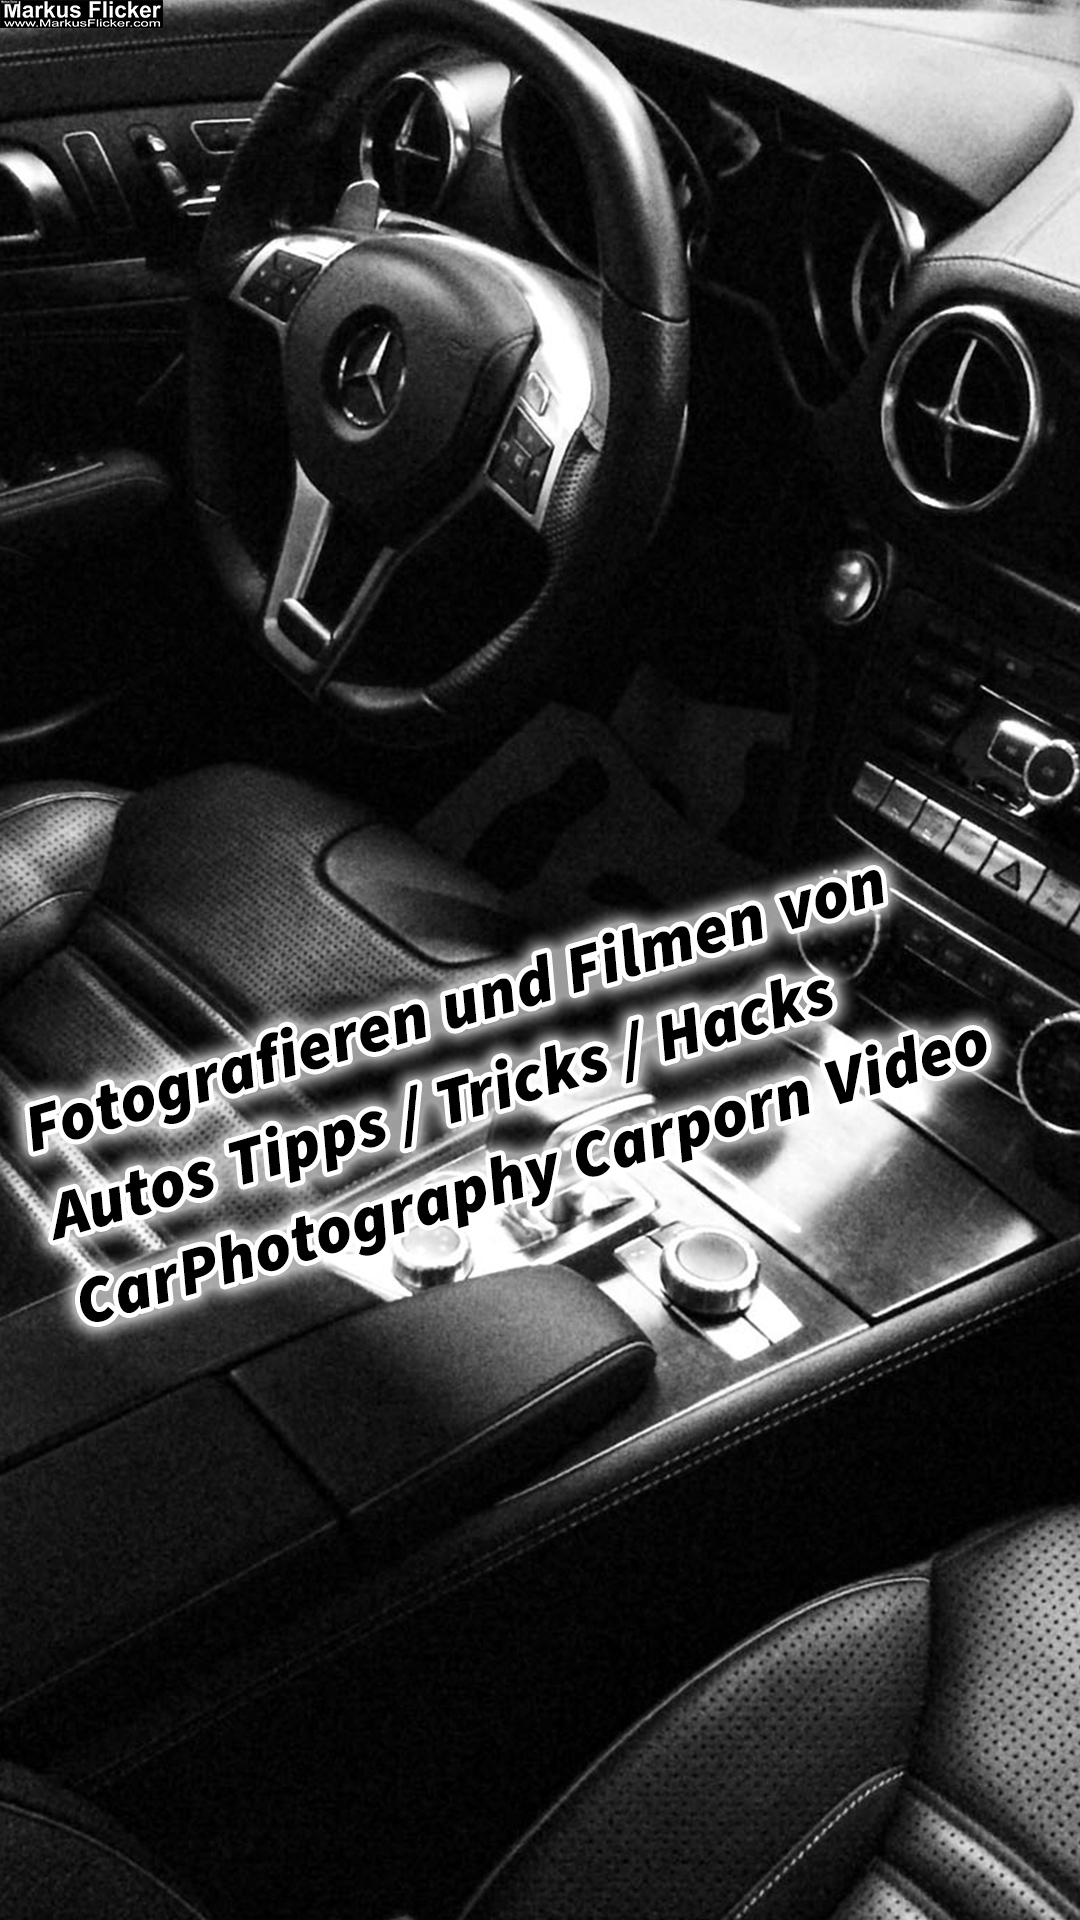 Fotografieren und Filmen von Autos Tipps & Tricks & Hacks CarPhotography Carporn Video